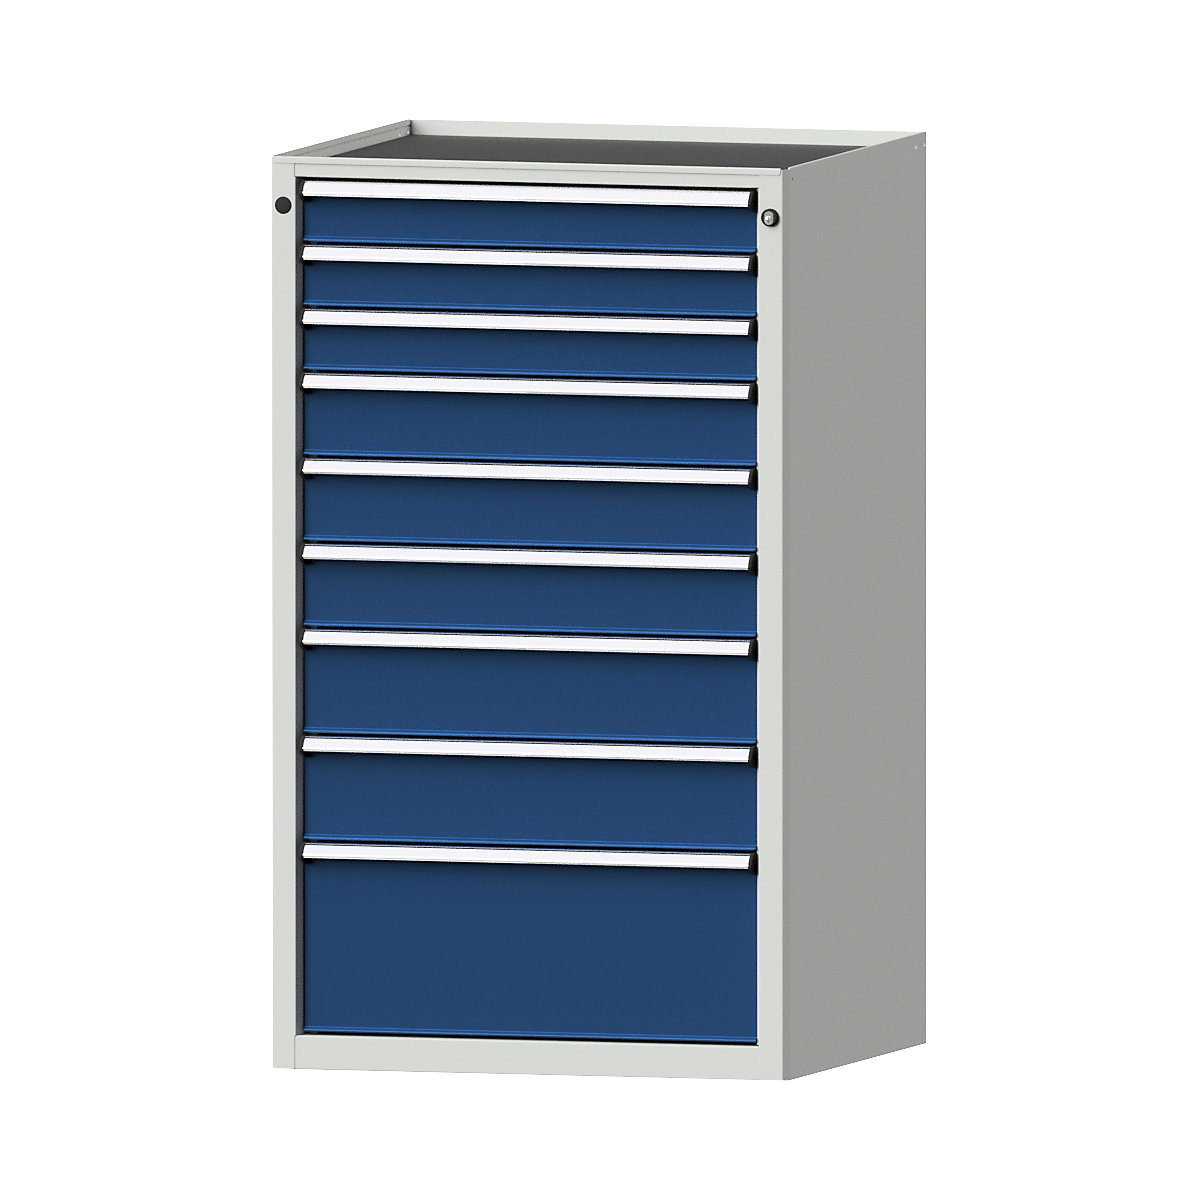 Zásuvková skříň – ANKE, š x h 760 x 675 mm, nosnost zásuvky 200 kg, 9 zásuvek, výška 1280 mm, čelo hořcově modré